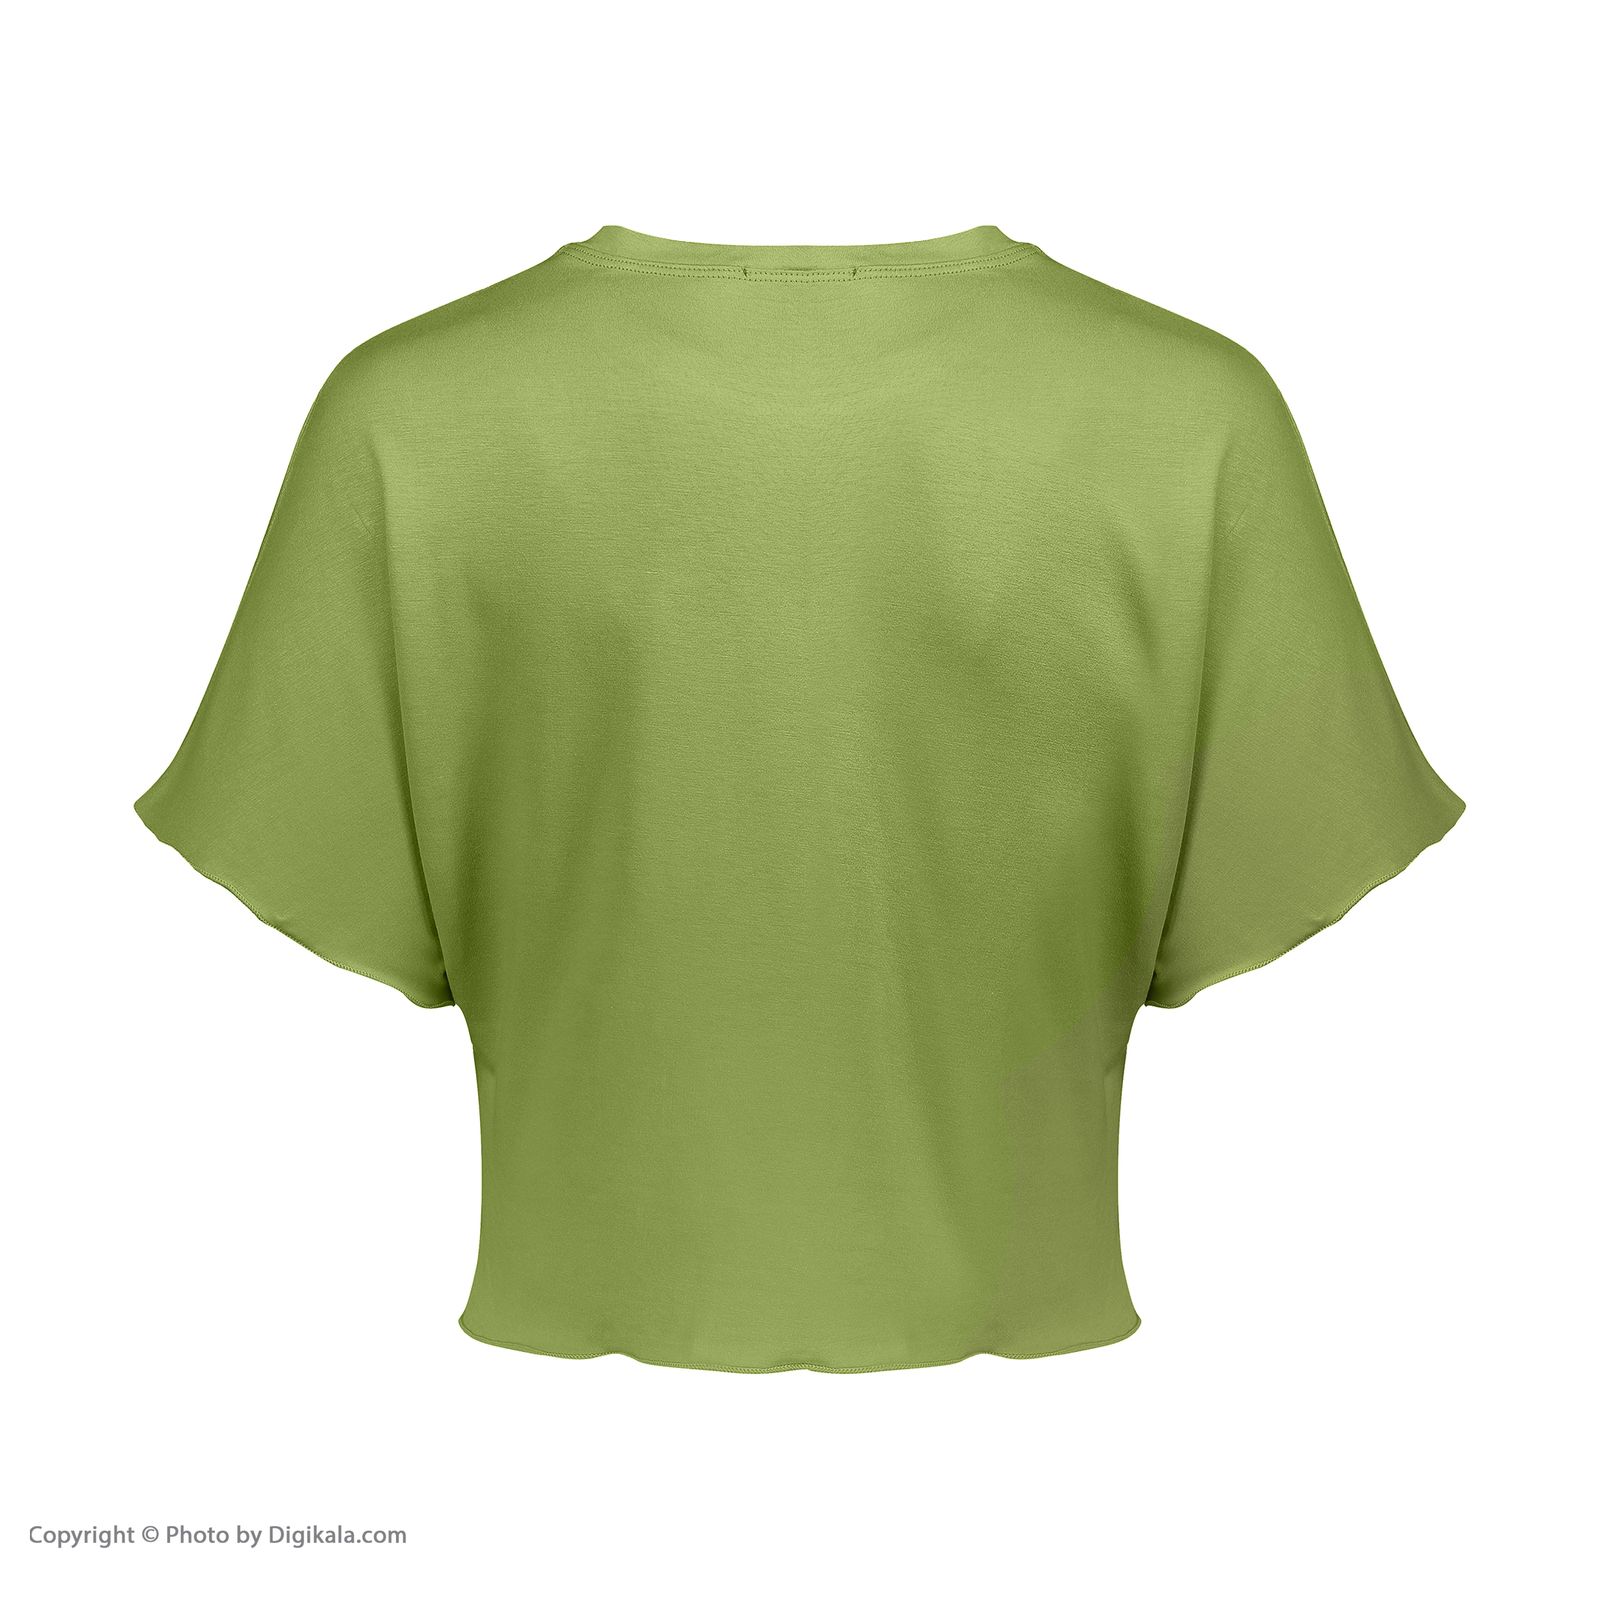 ست تیشرت و شلوارک زنانه افراتین مدل آرام رنگ سبز -  - 11